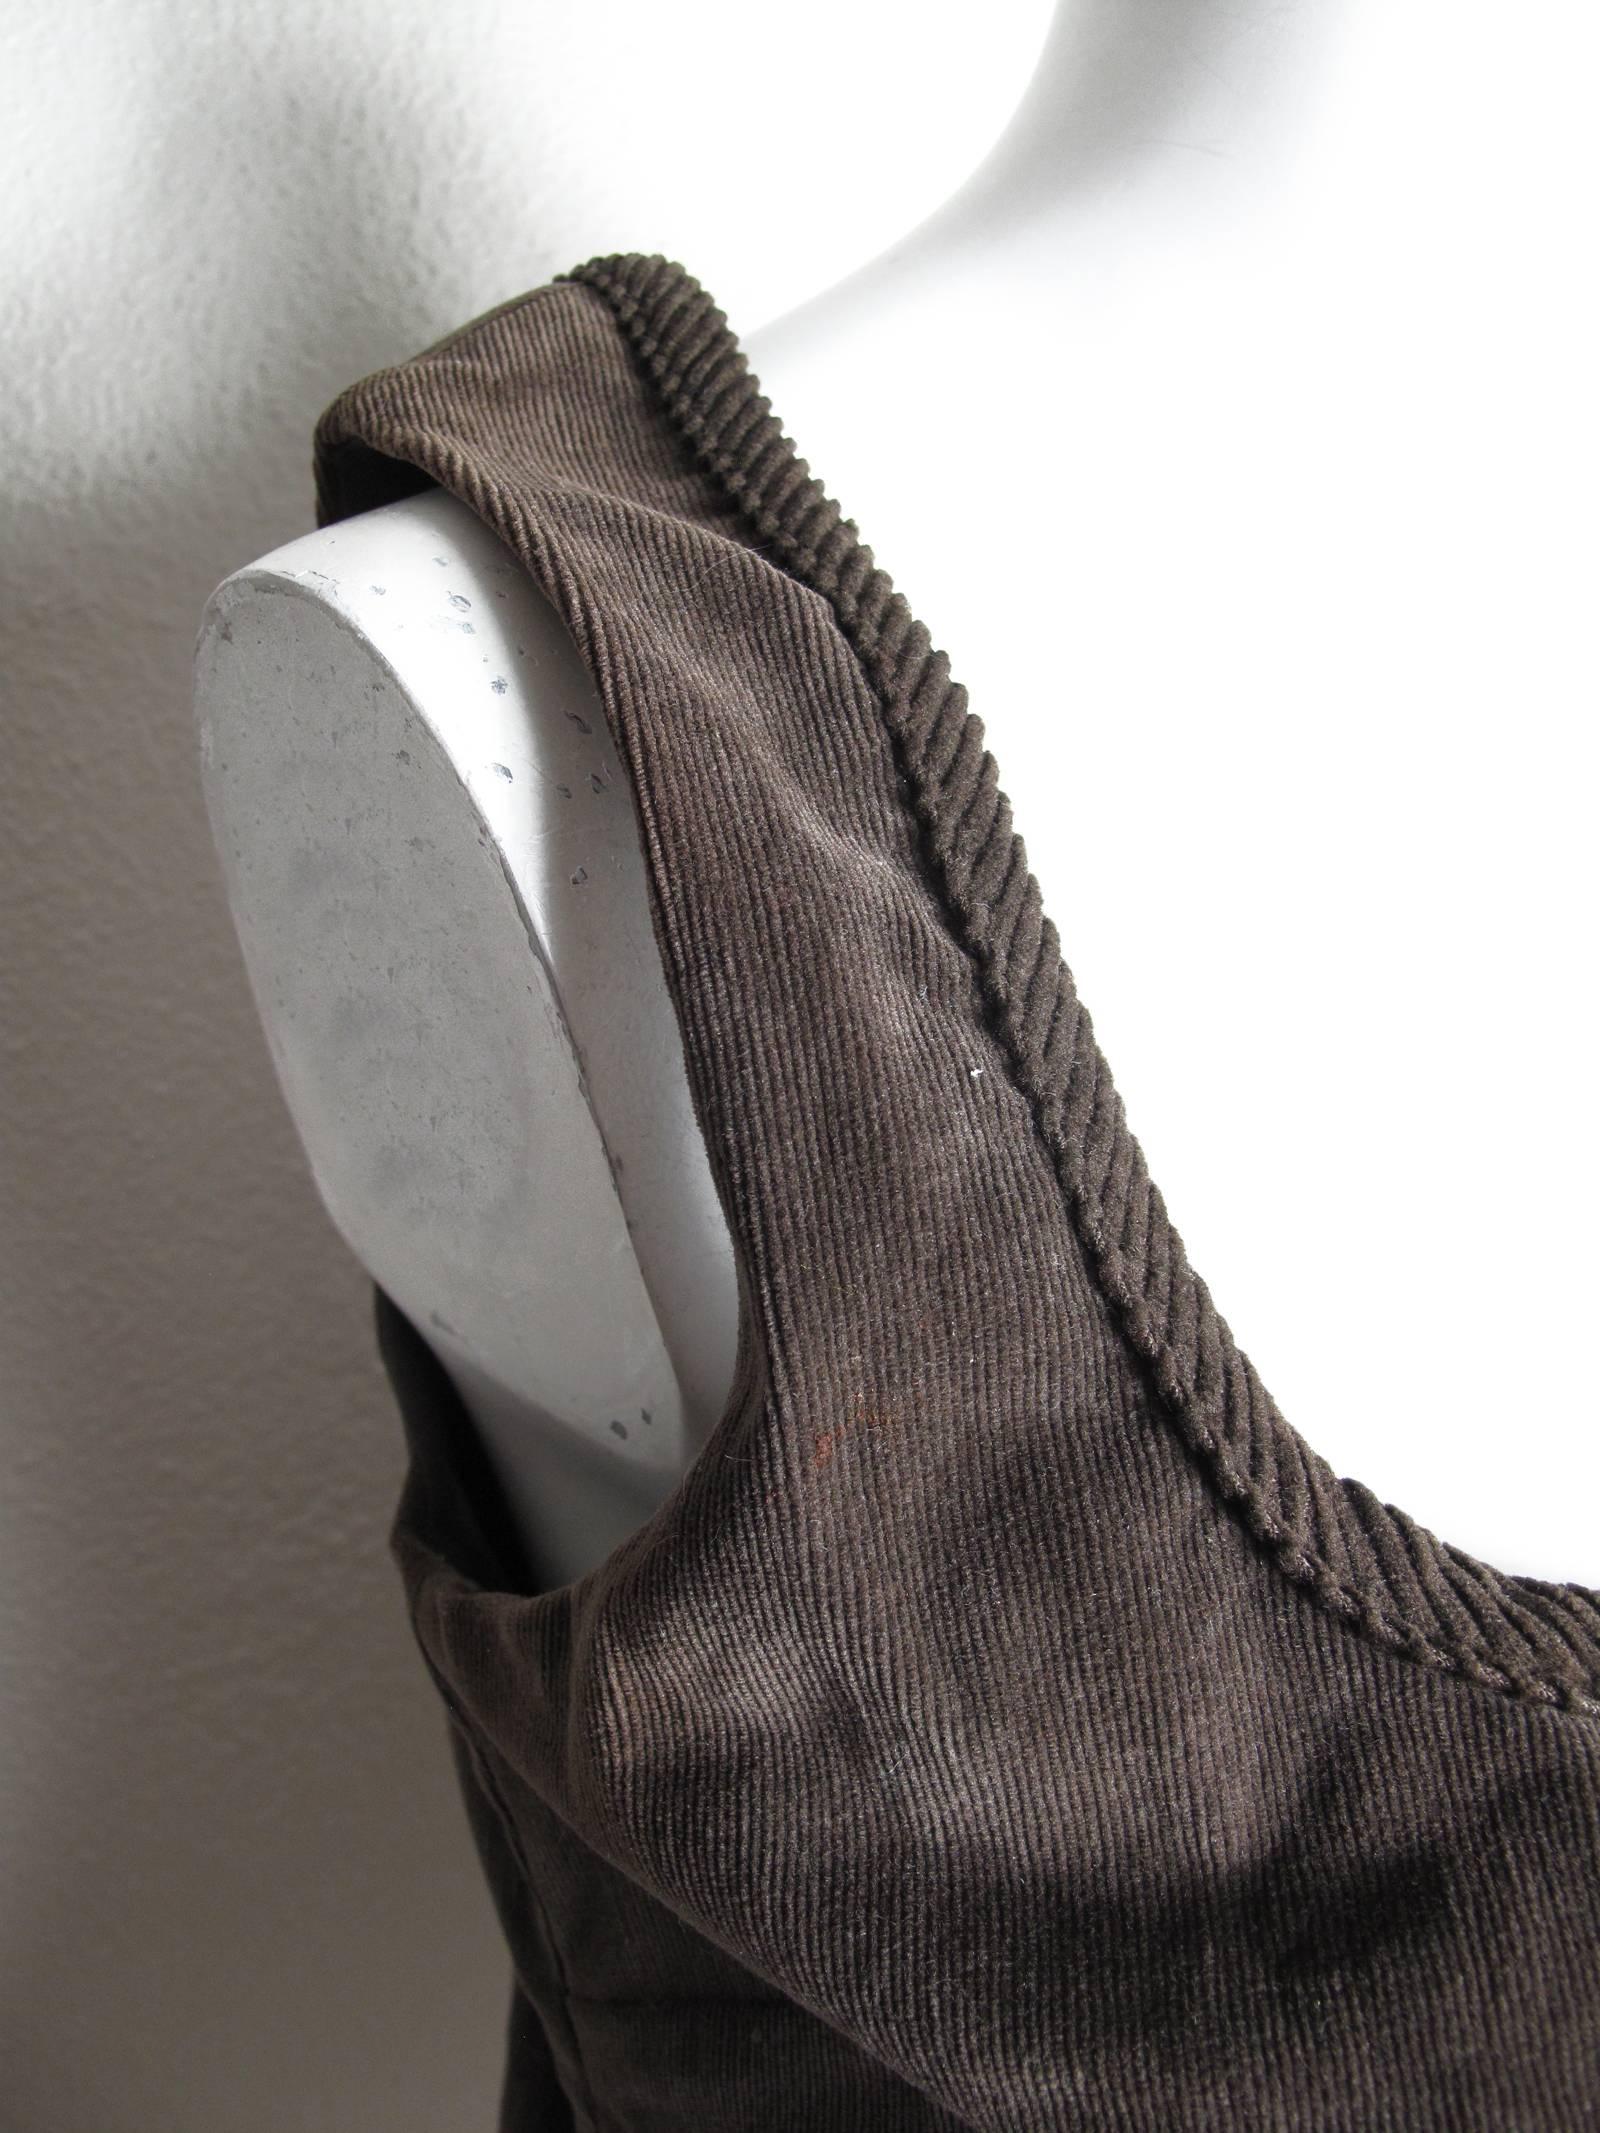 D & G brown corduroy corset top.  Condition: Excellent. Size 44
